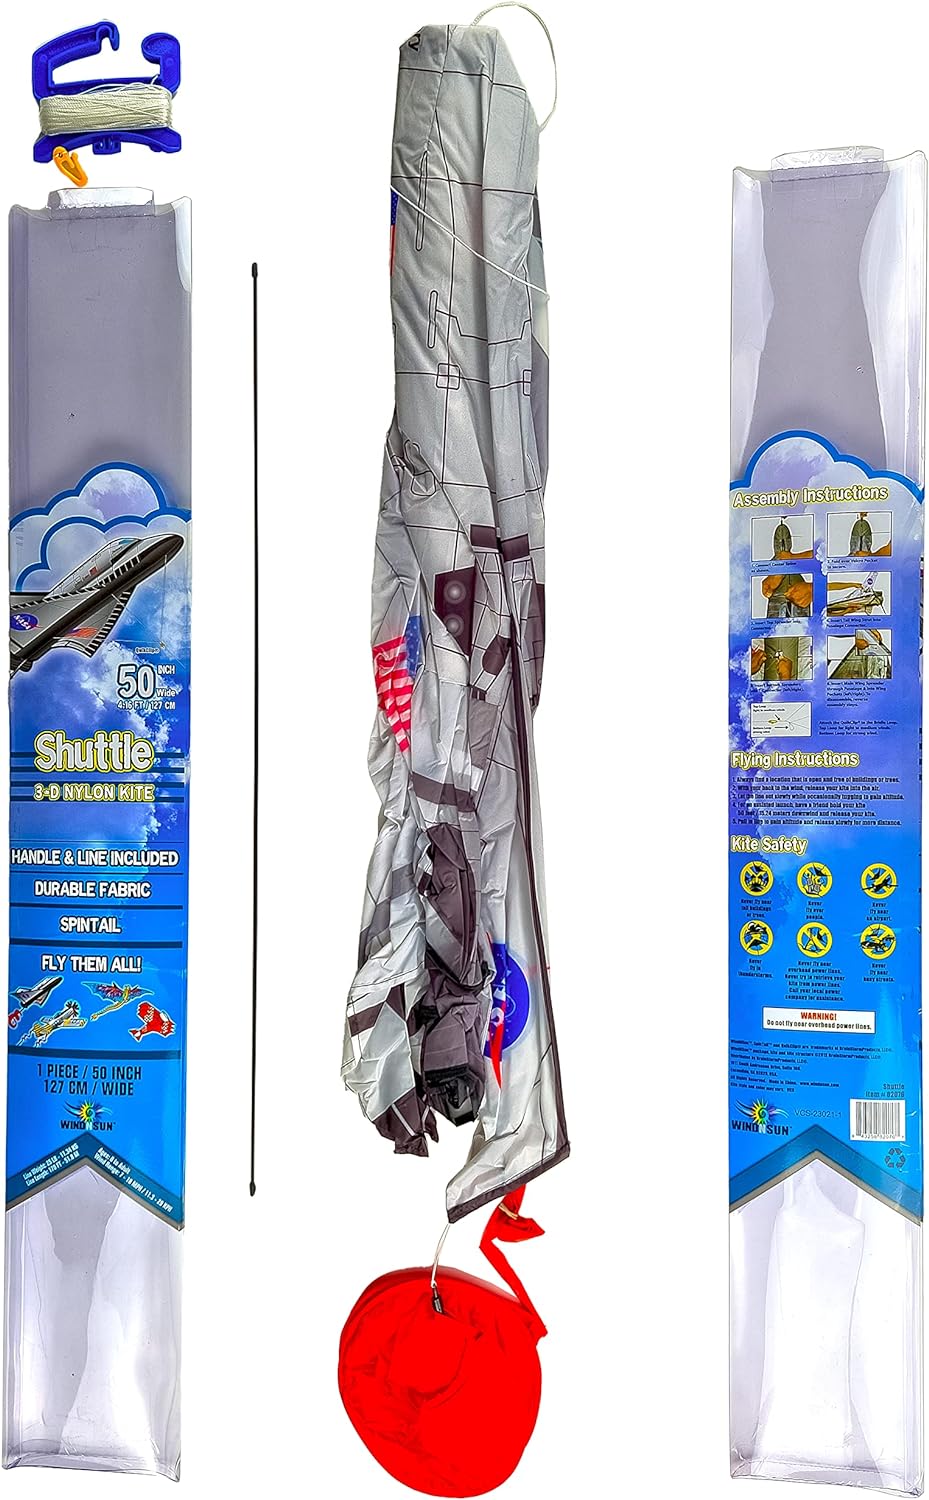 Aircraft Space Shuttle Kite